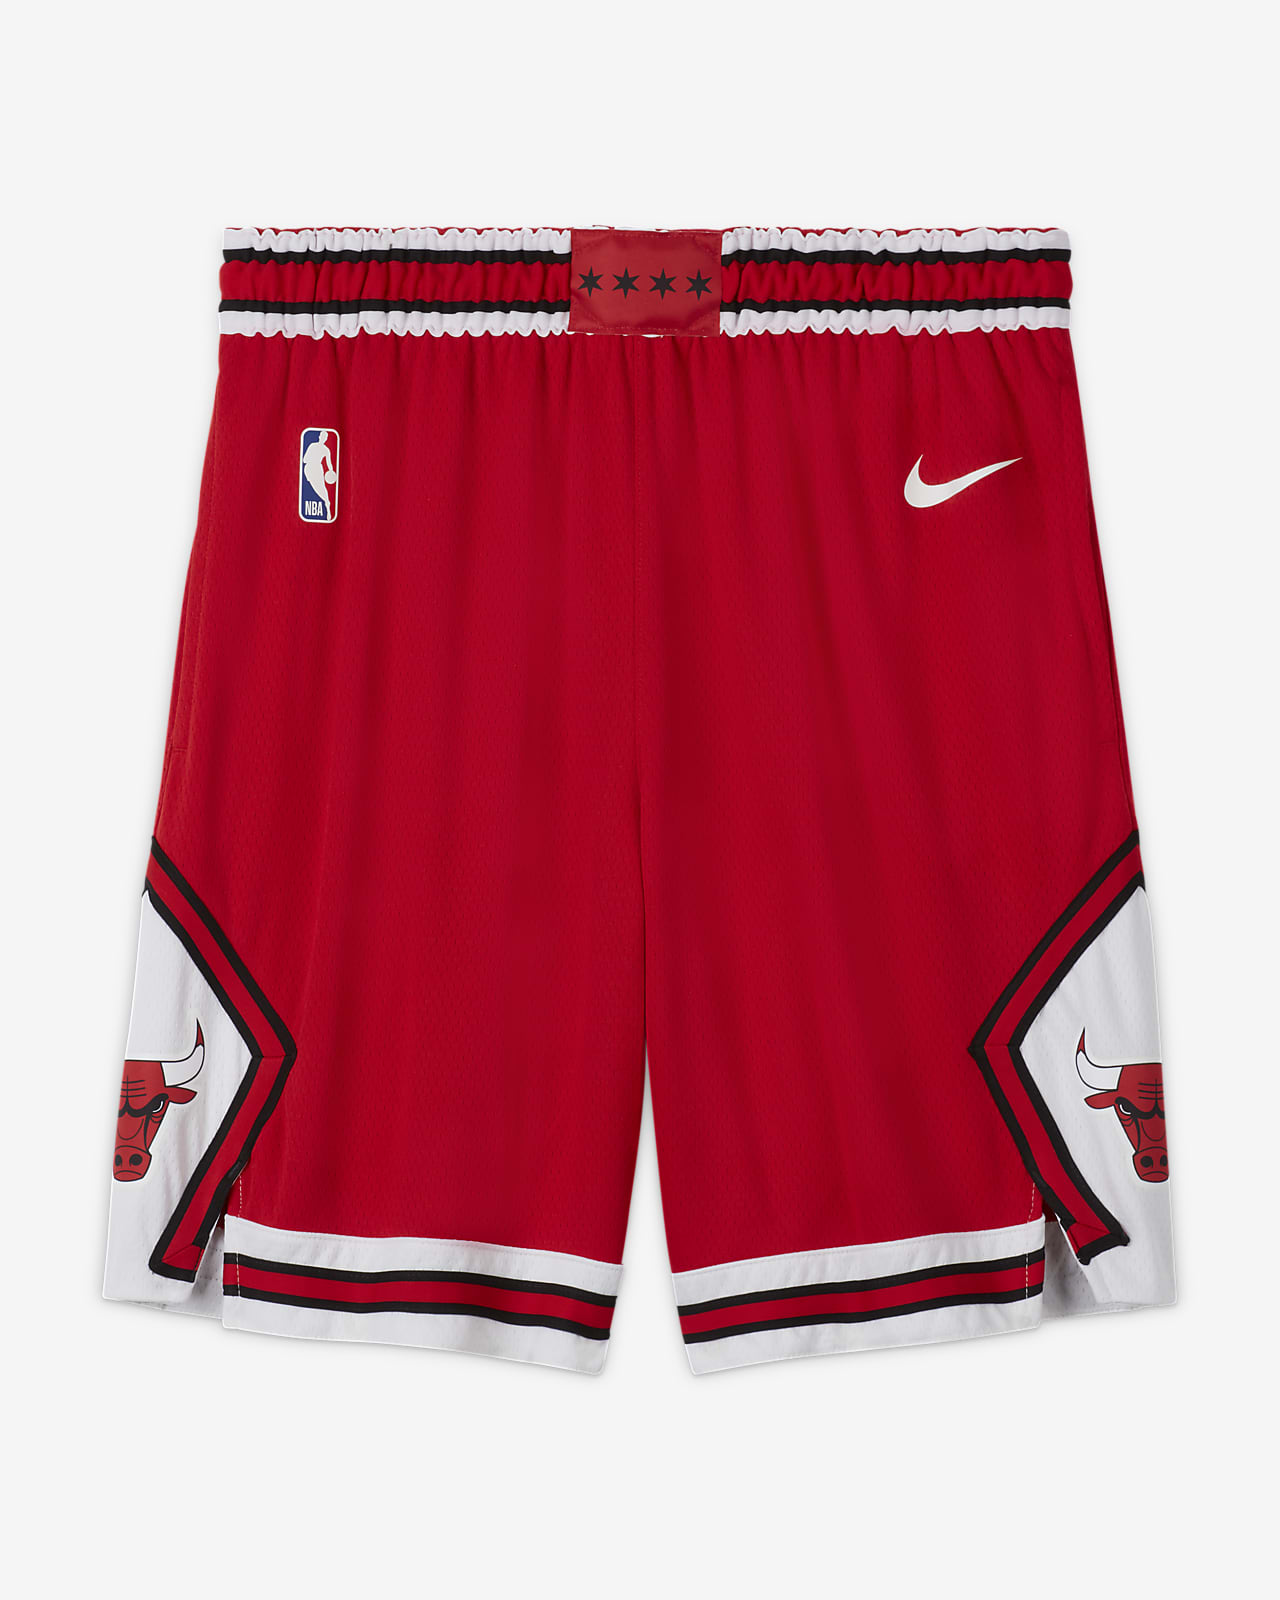 Chicago Bulls Icon Edition Pantalón corto Nike NBA Swingman - Hombre